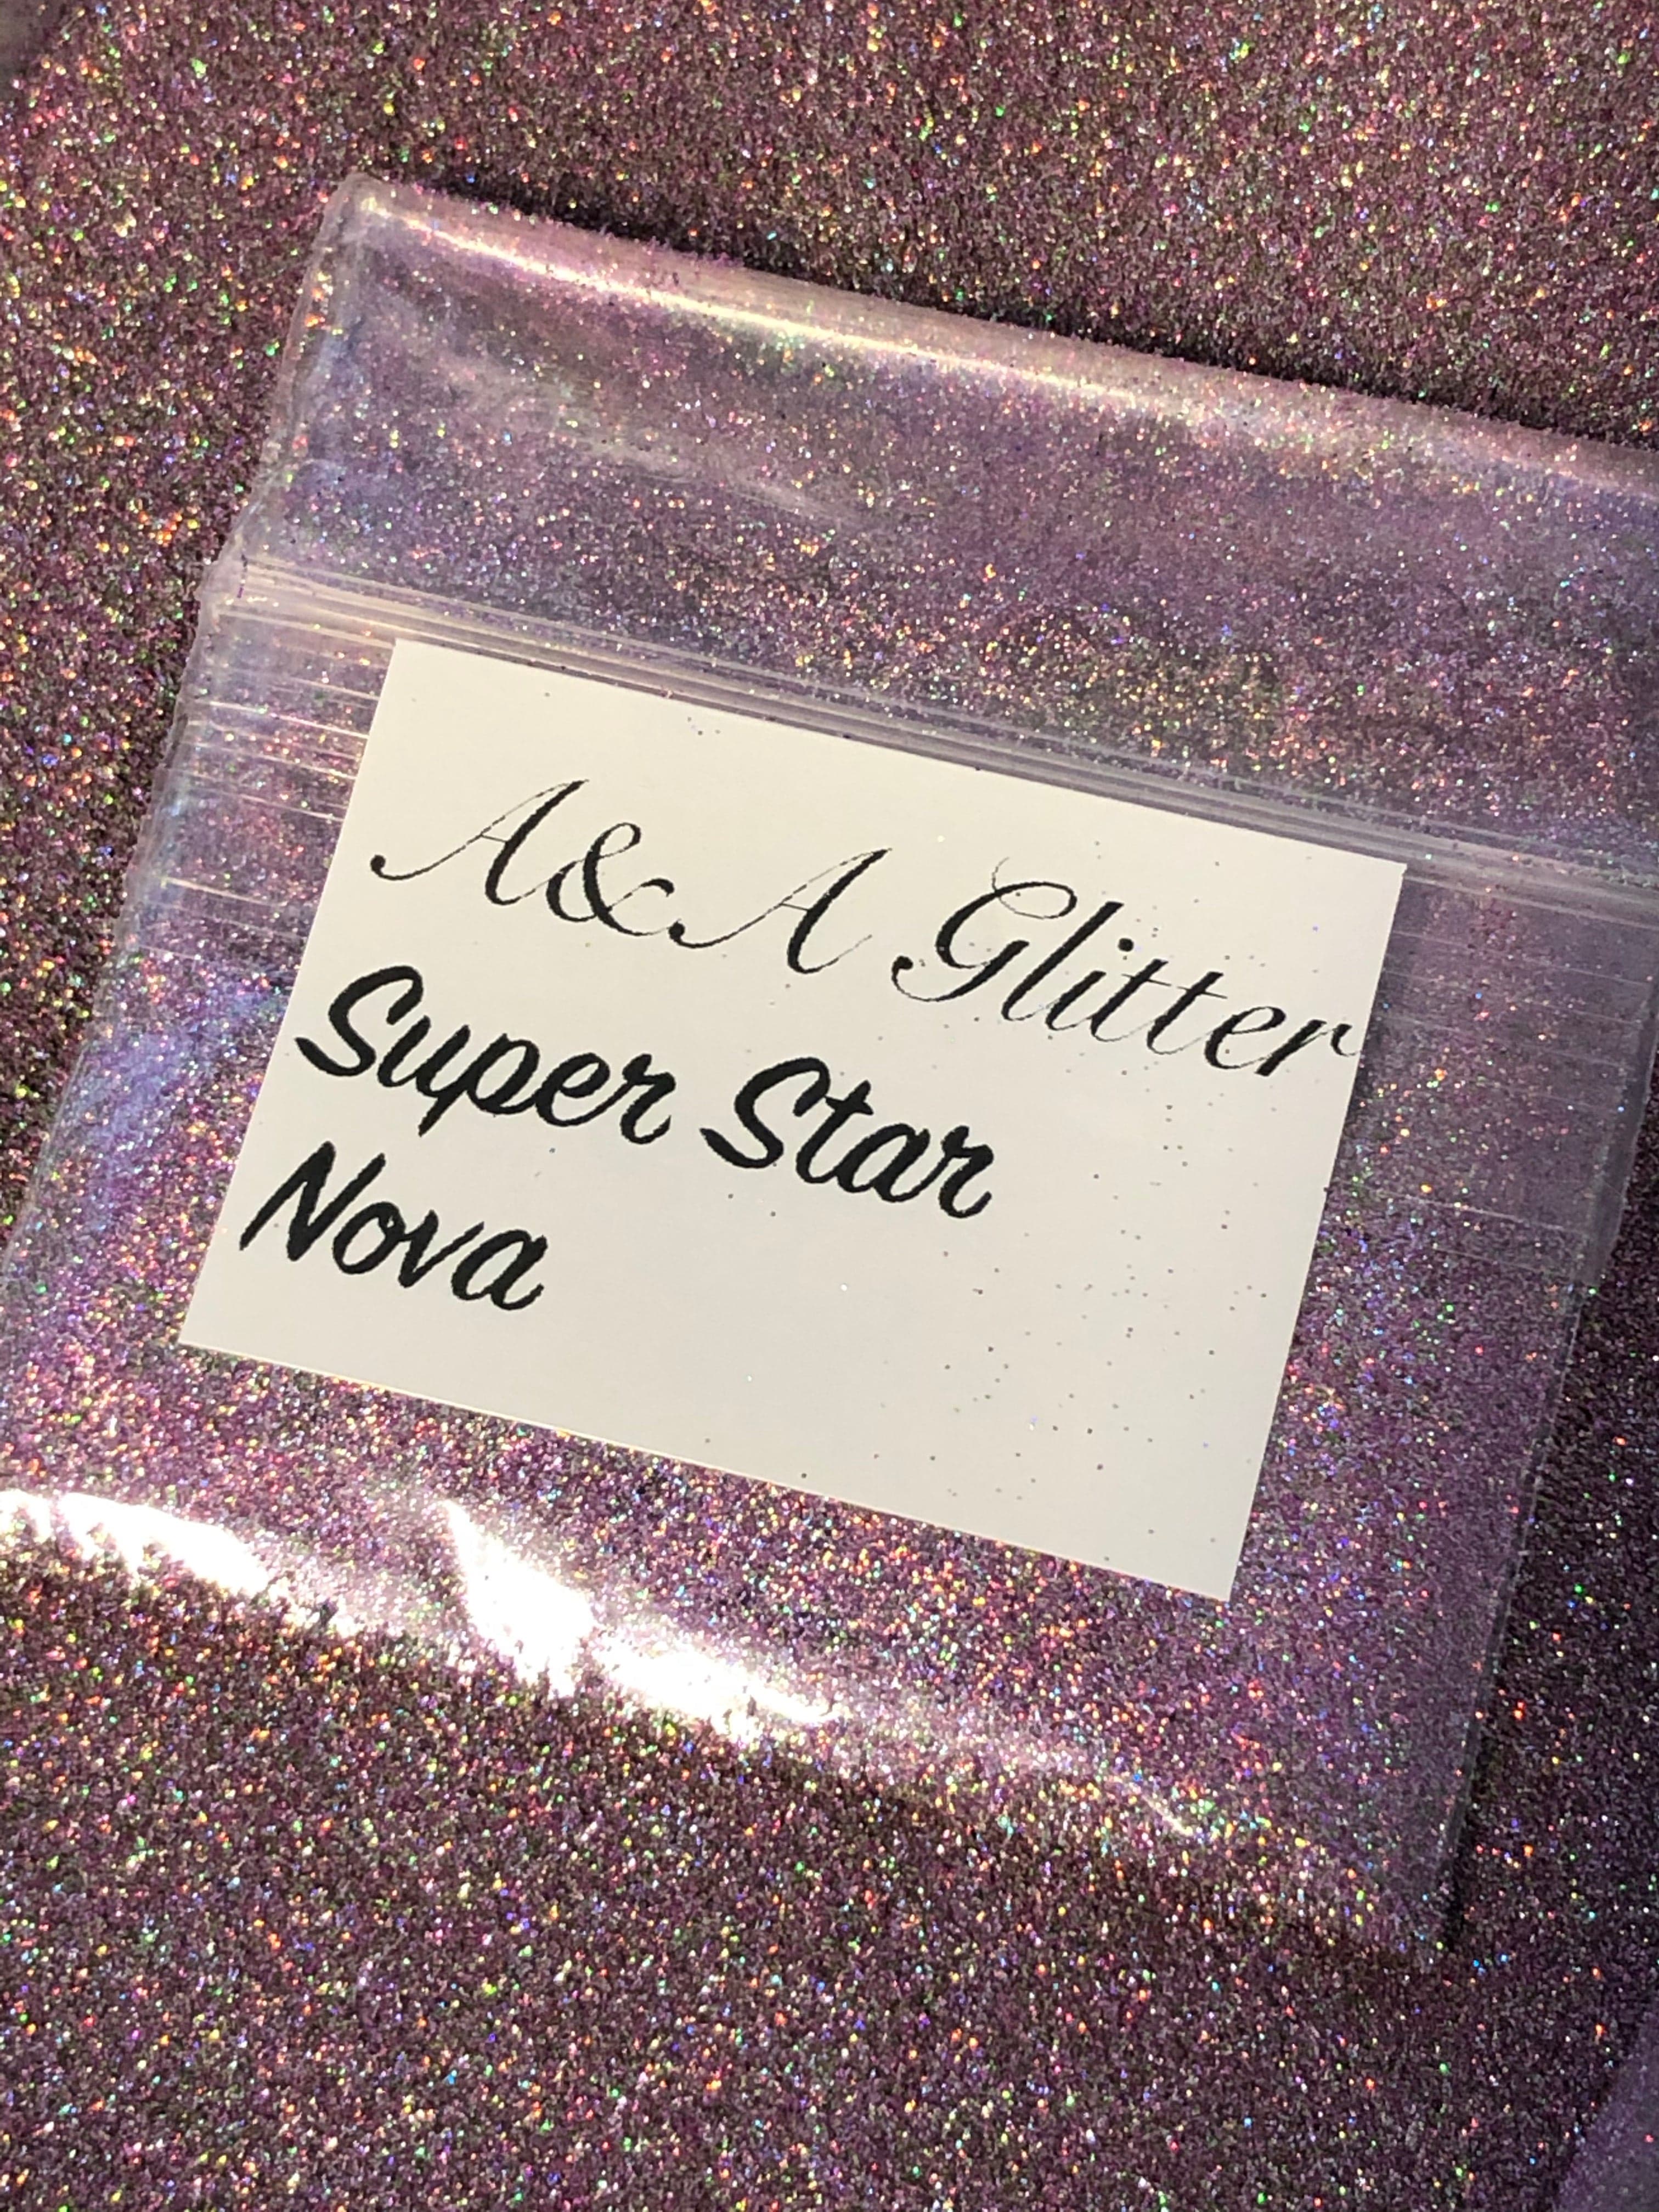 Super Star - Ultra Fine